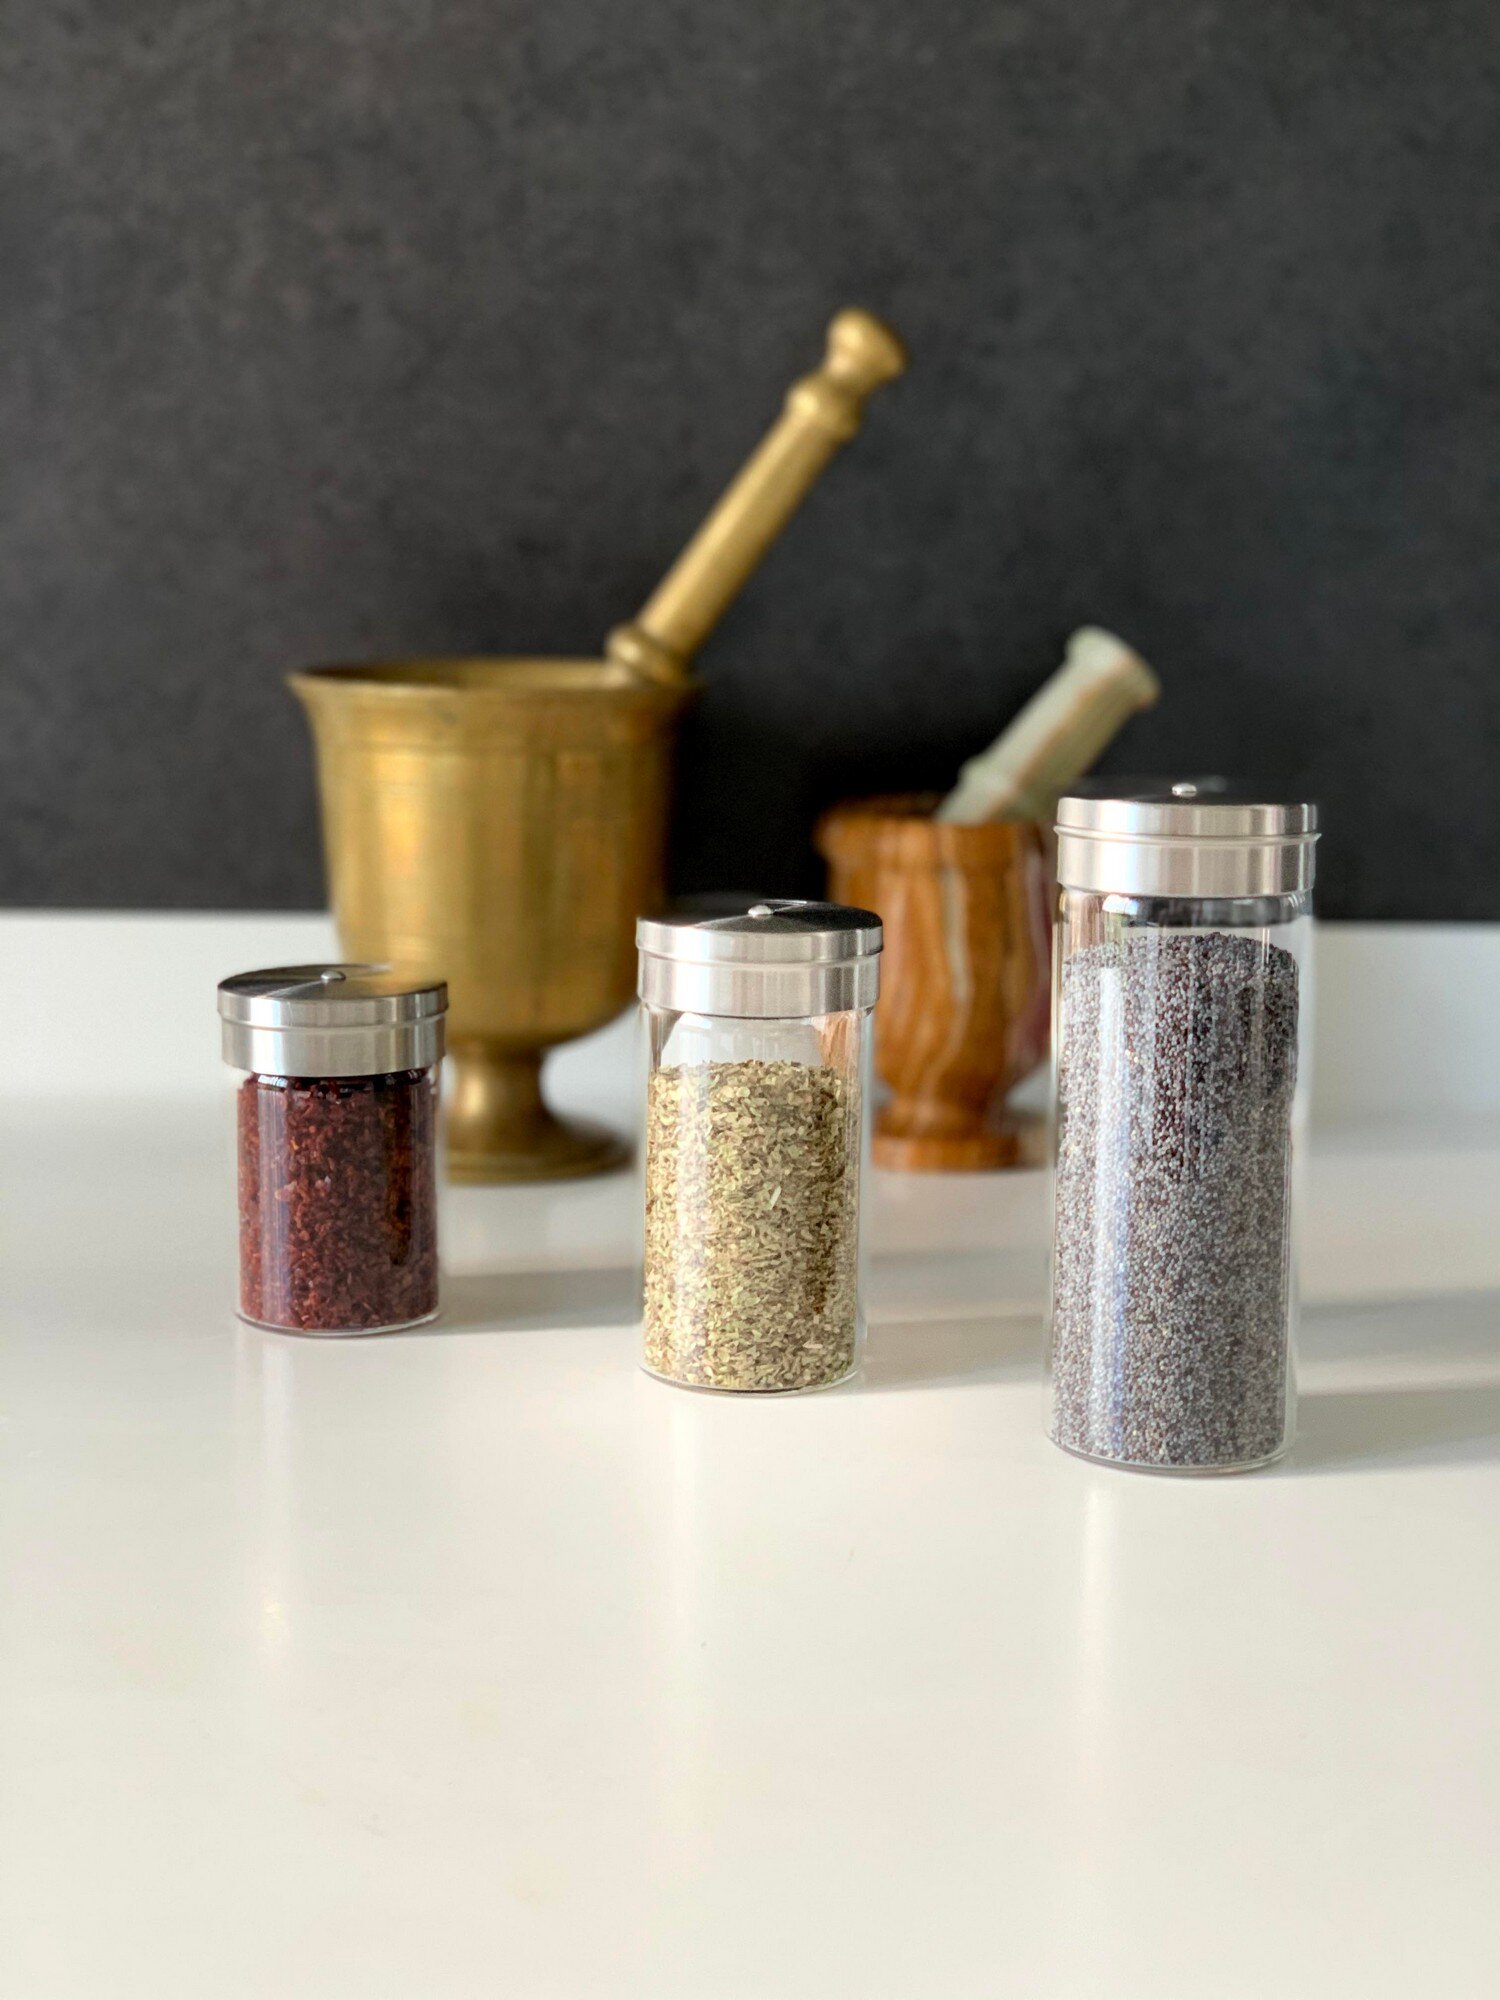 CELECTIGO Spice Jars